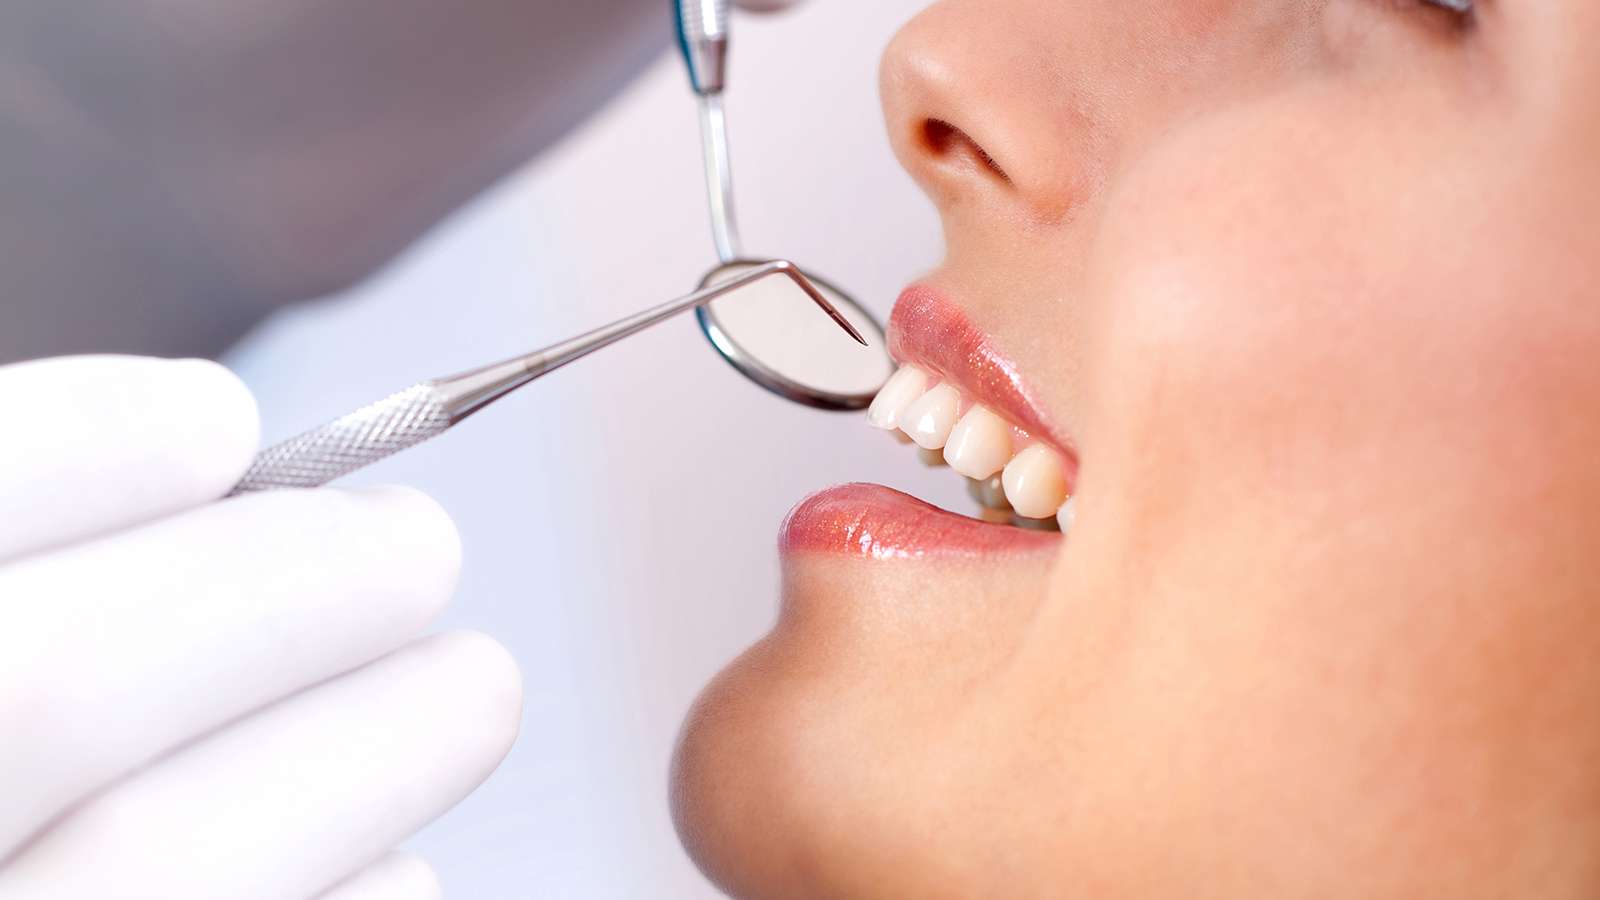 Dentalazer Ağız ve Diş Sağlığı Polikliniği